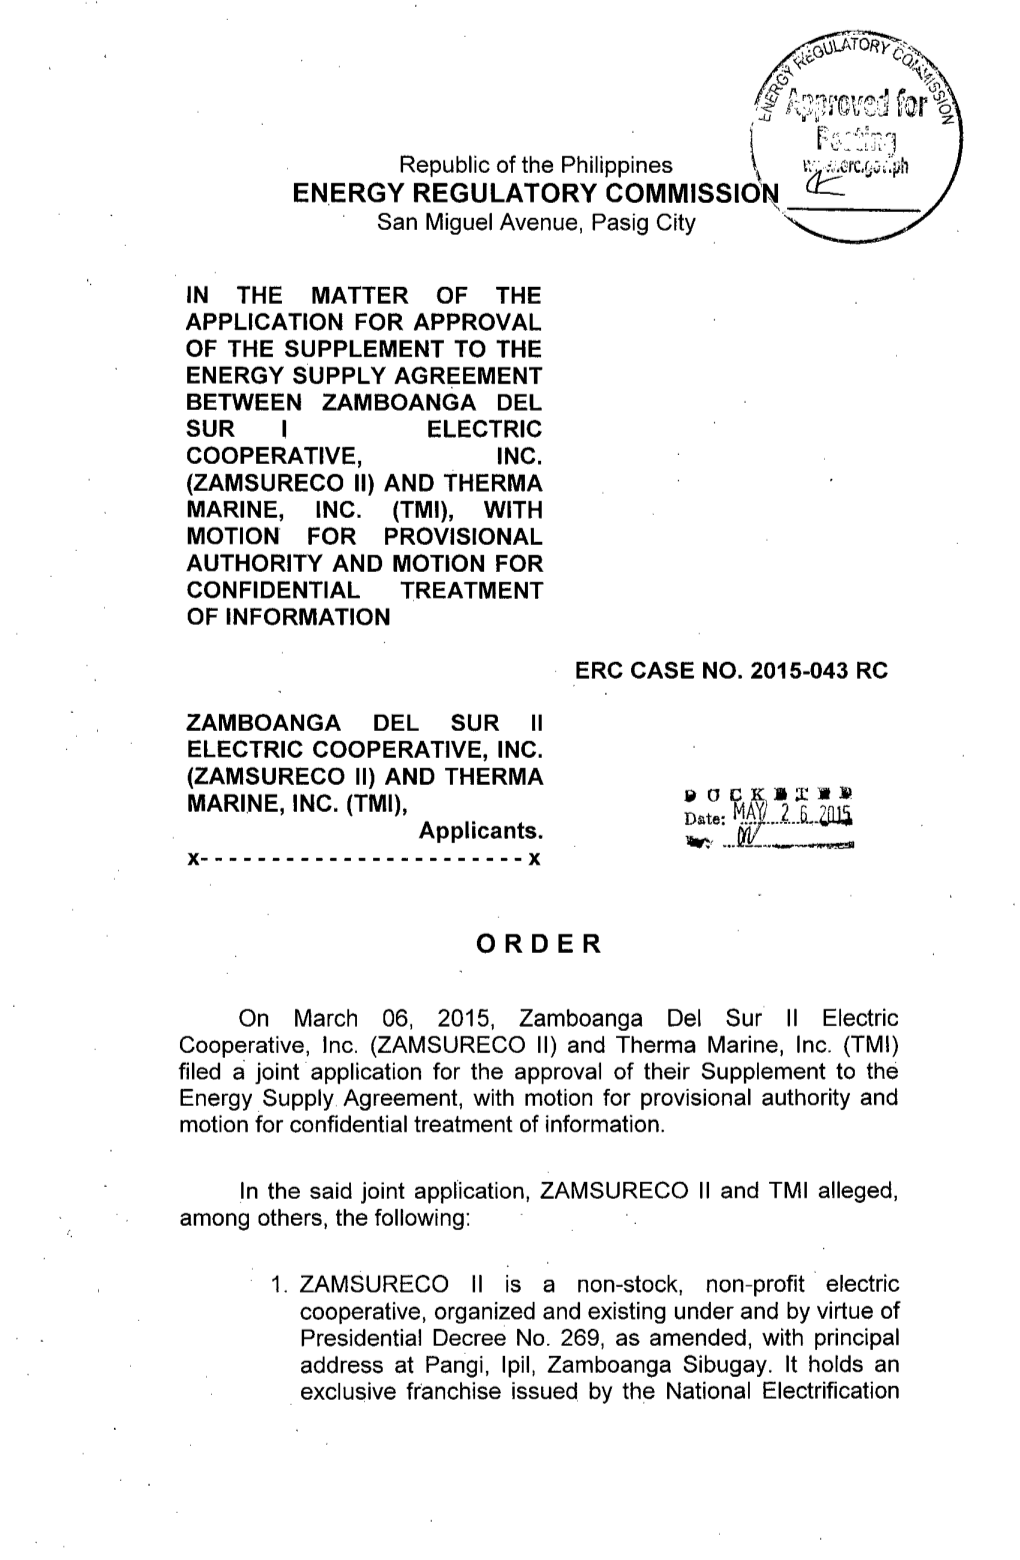 Order, ERC Case No. 2015-043 RC